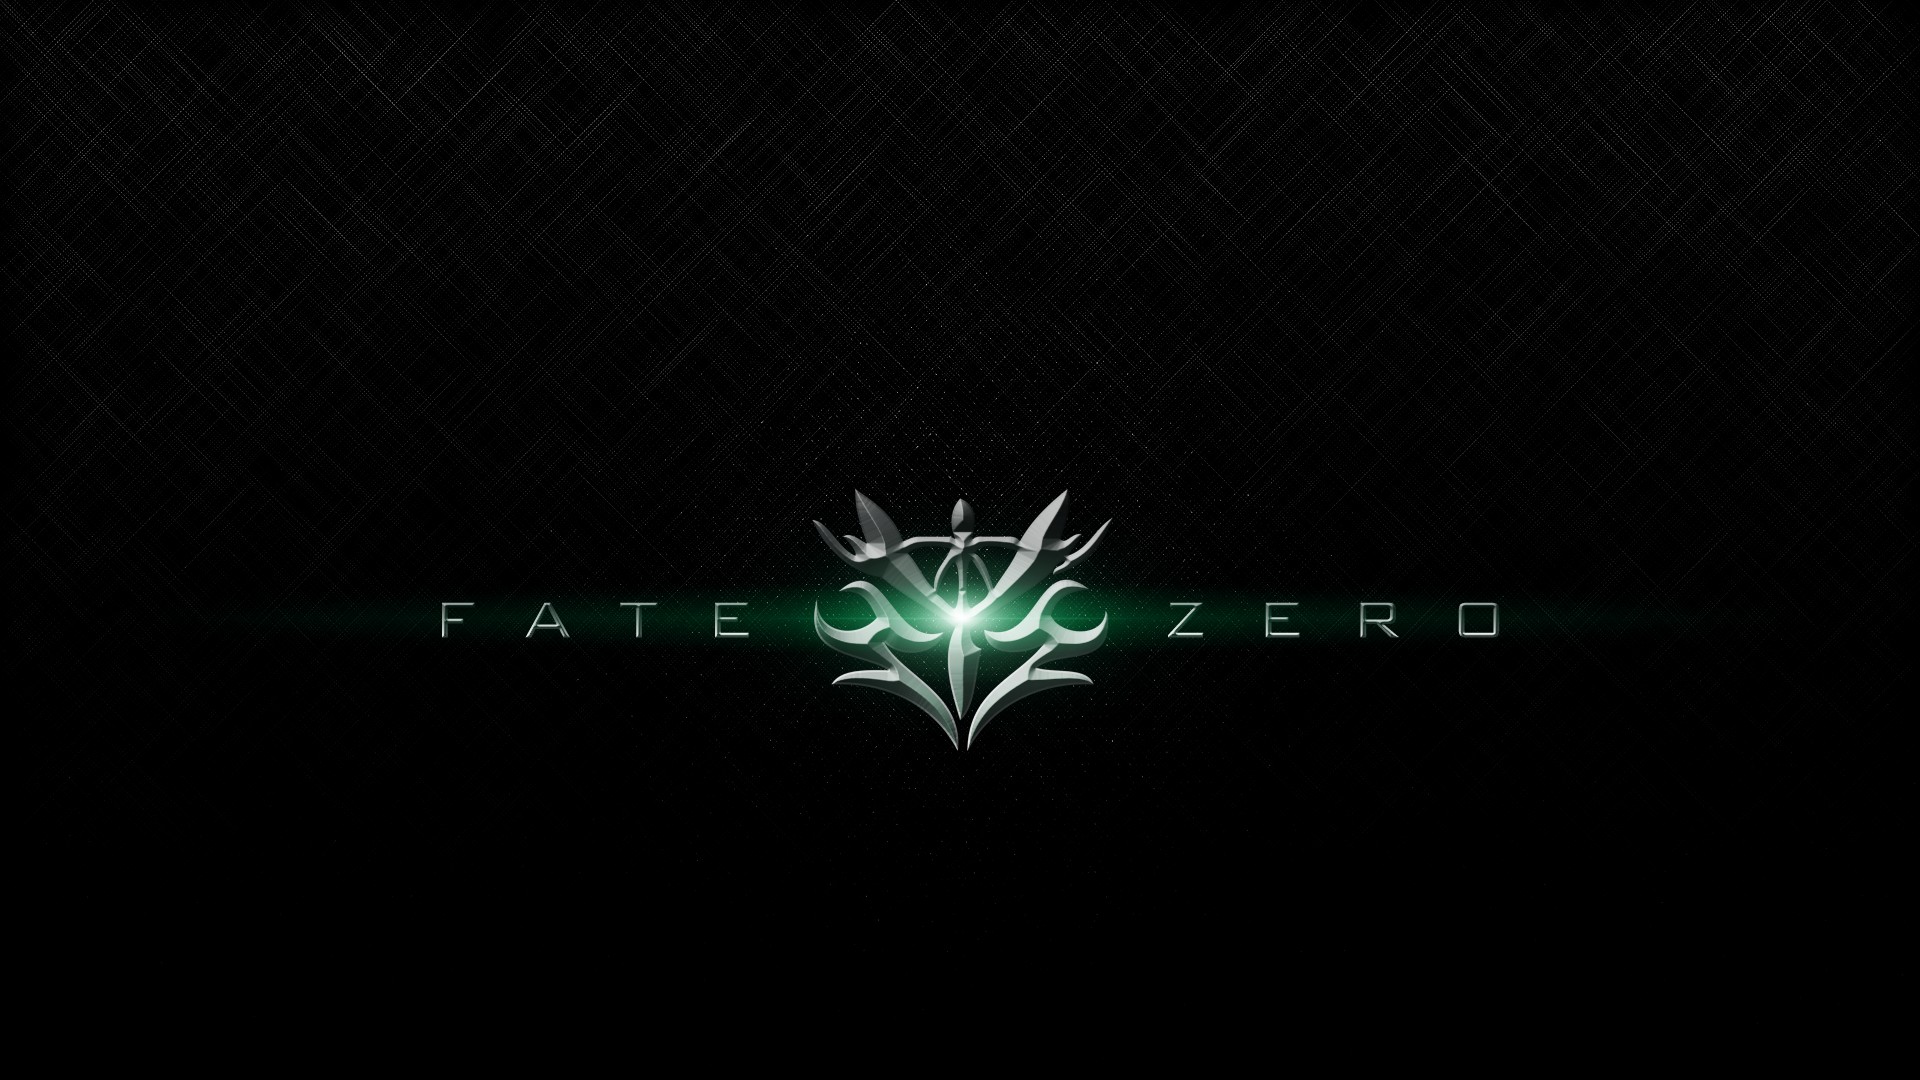 Download mobile wallpaper Fate/zero, Fate Series, Anime for free.